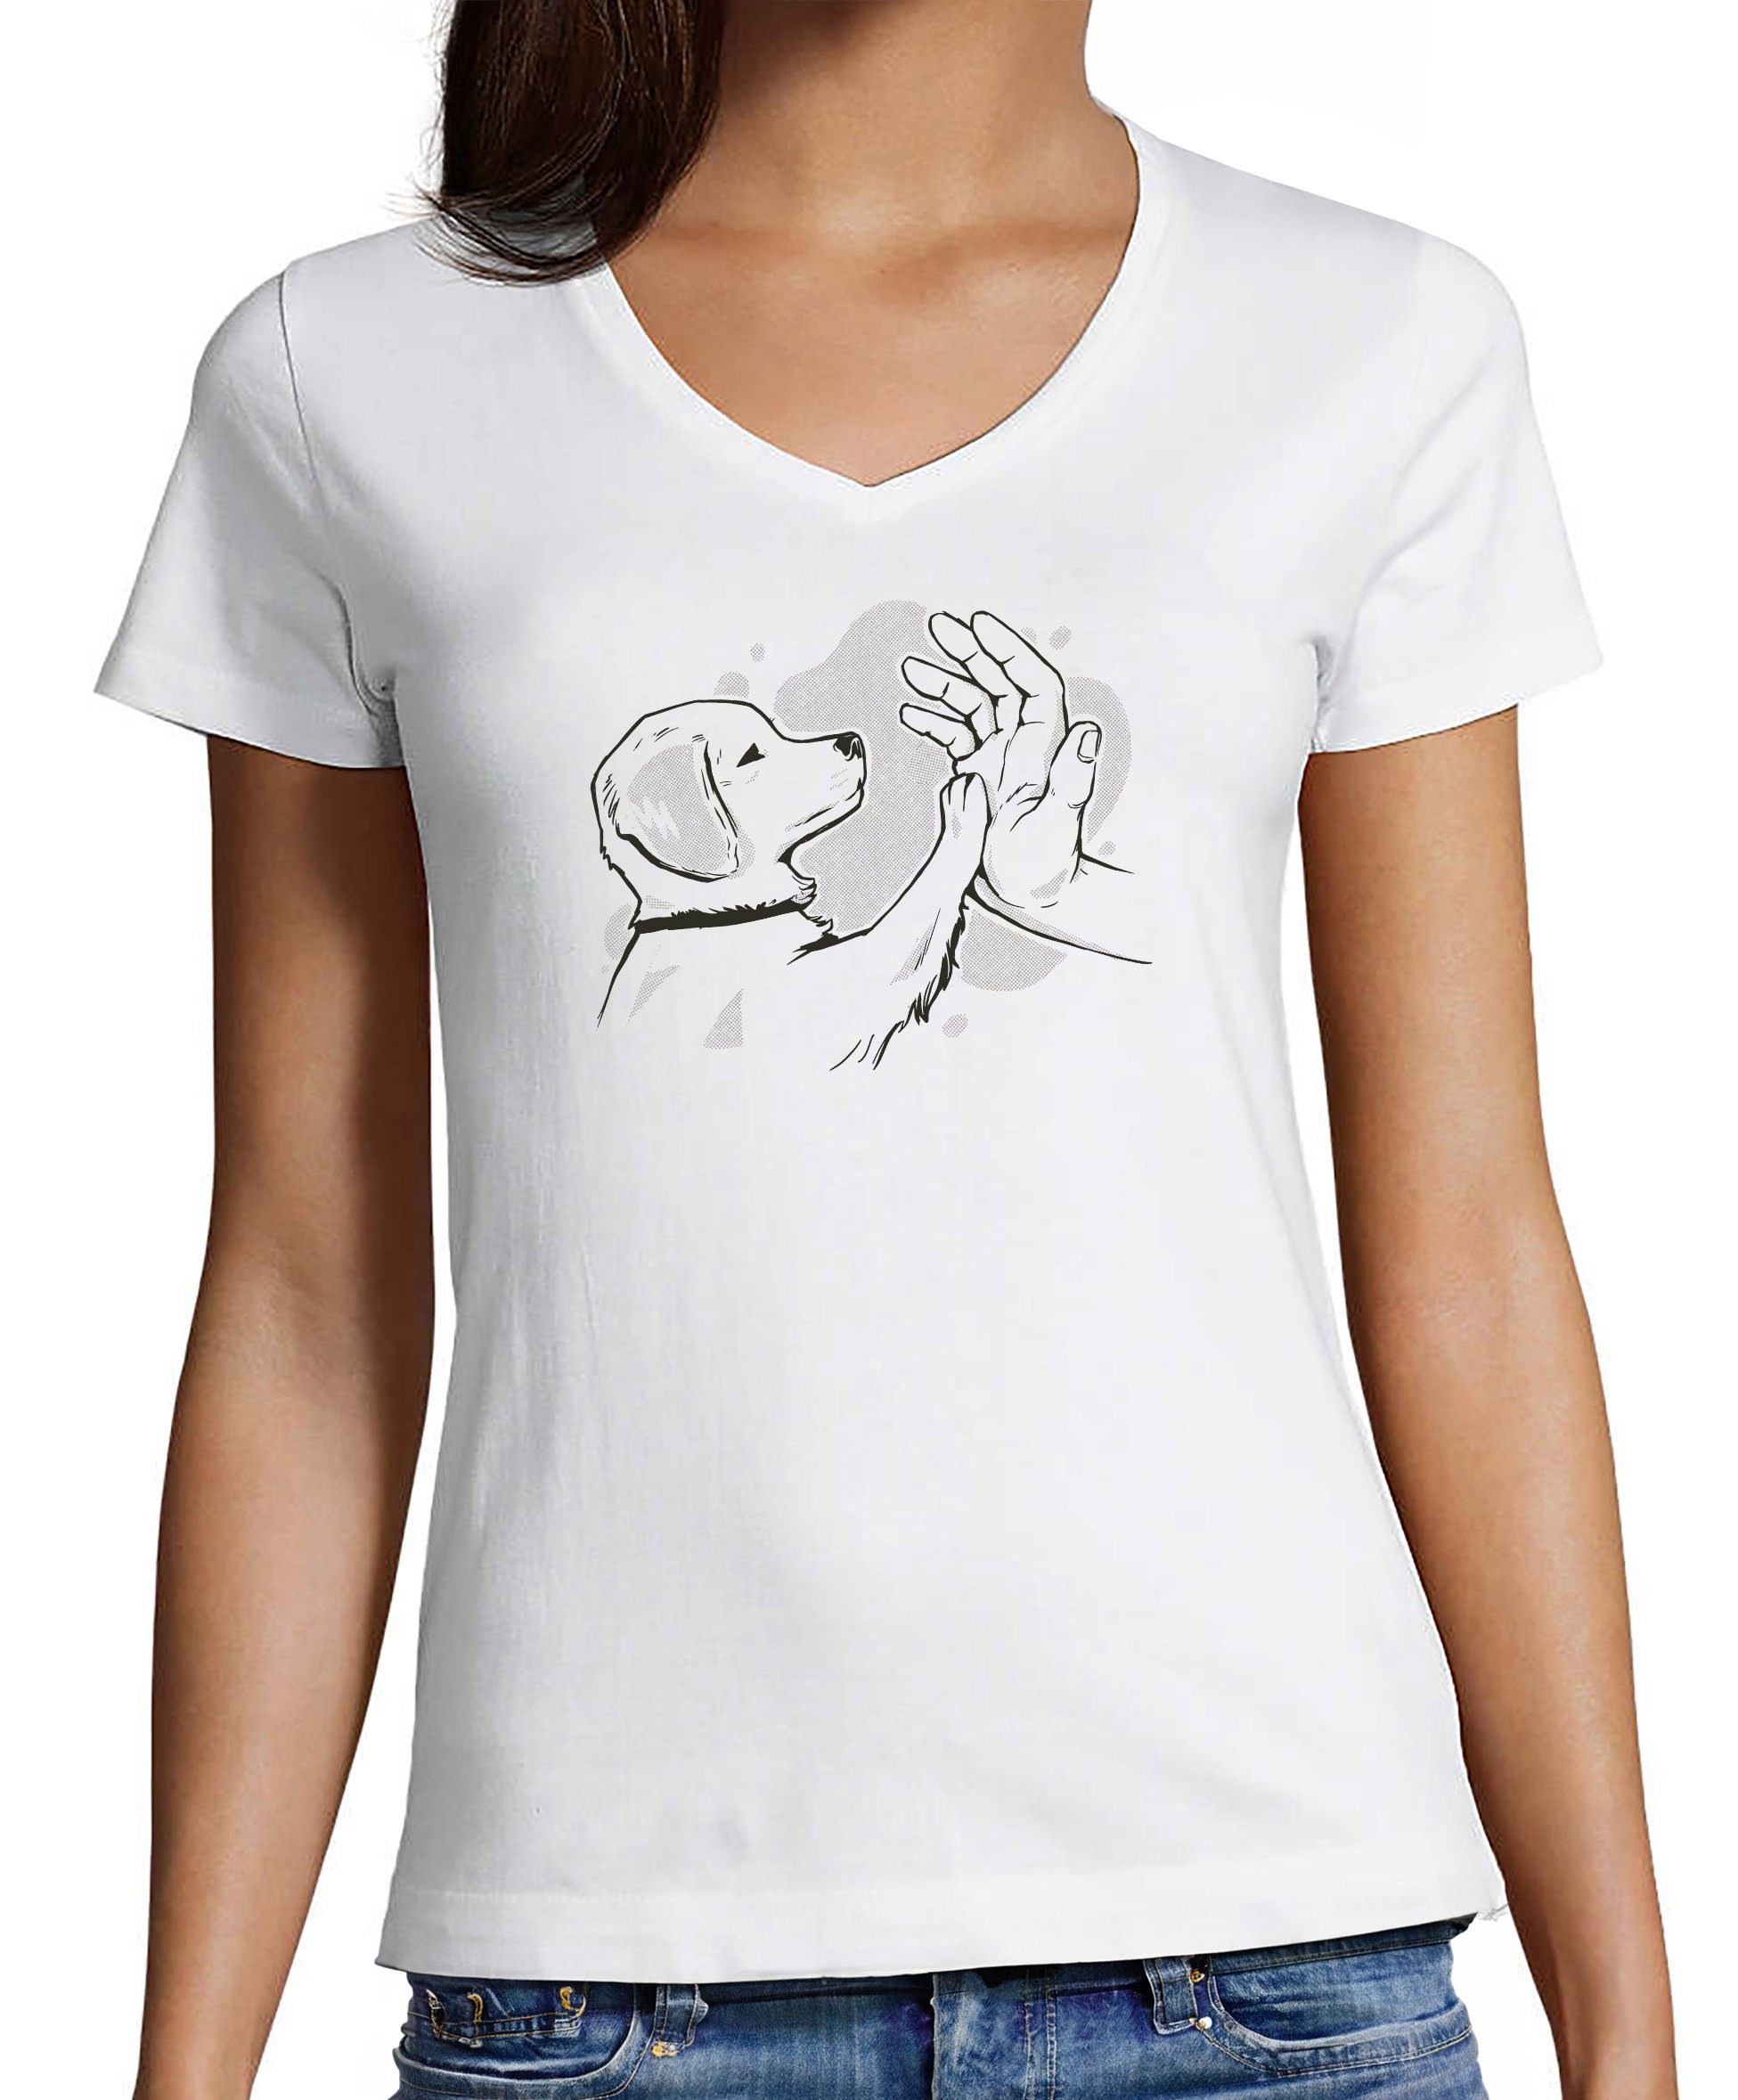 MyDesign24 T-Shirt Damen Hunde Print Shirt - Hundewelpen gibt high five V-Ausschnitt Baumwollshirt mit Aufdruck Slim Fit, i241